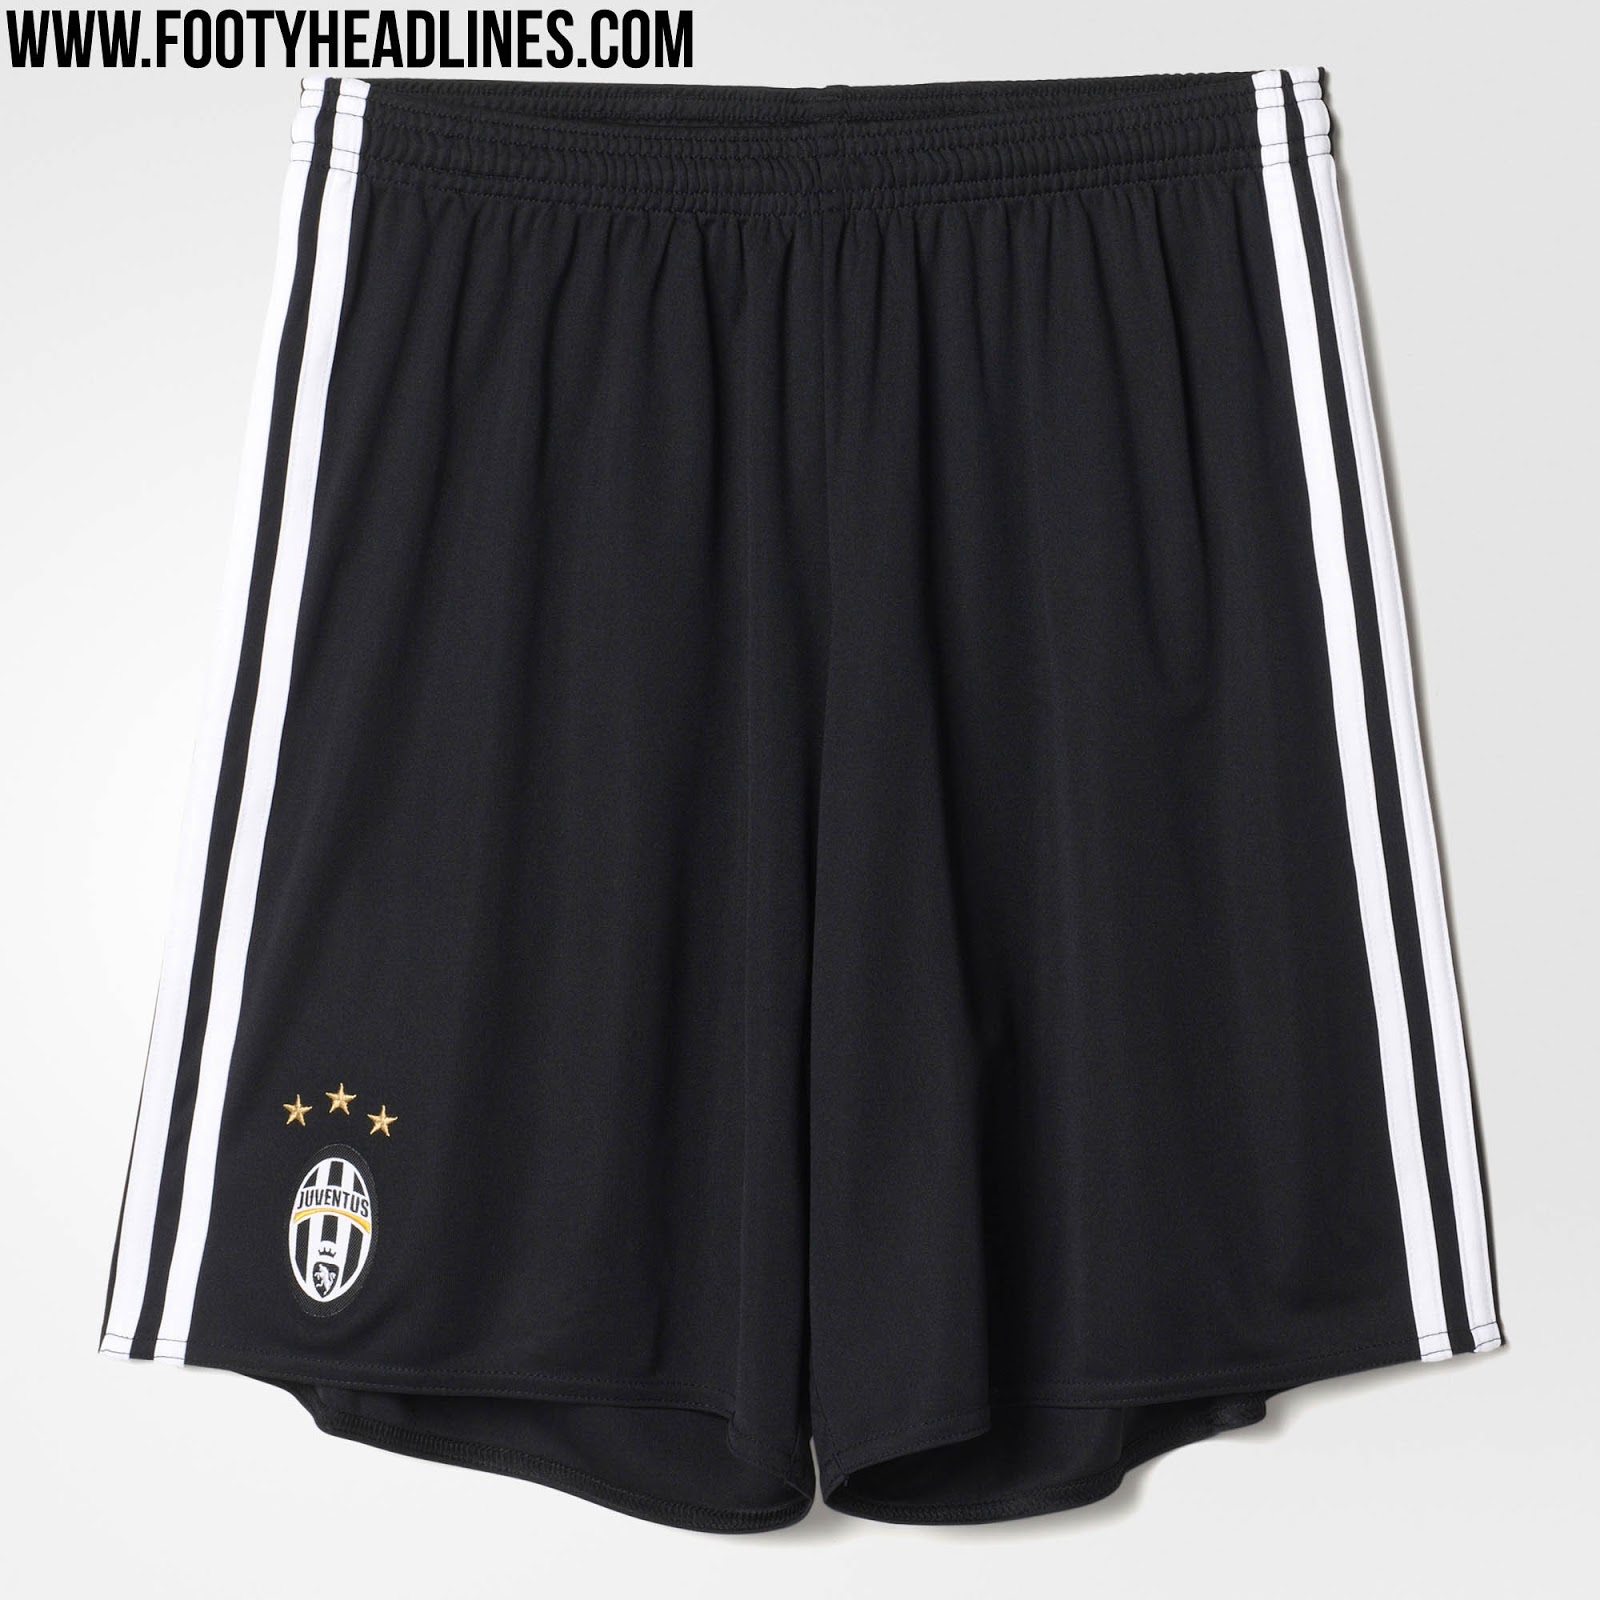 Short Juventus 2016-17 Adidas 